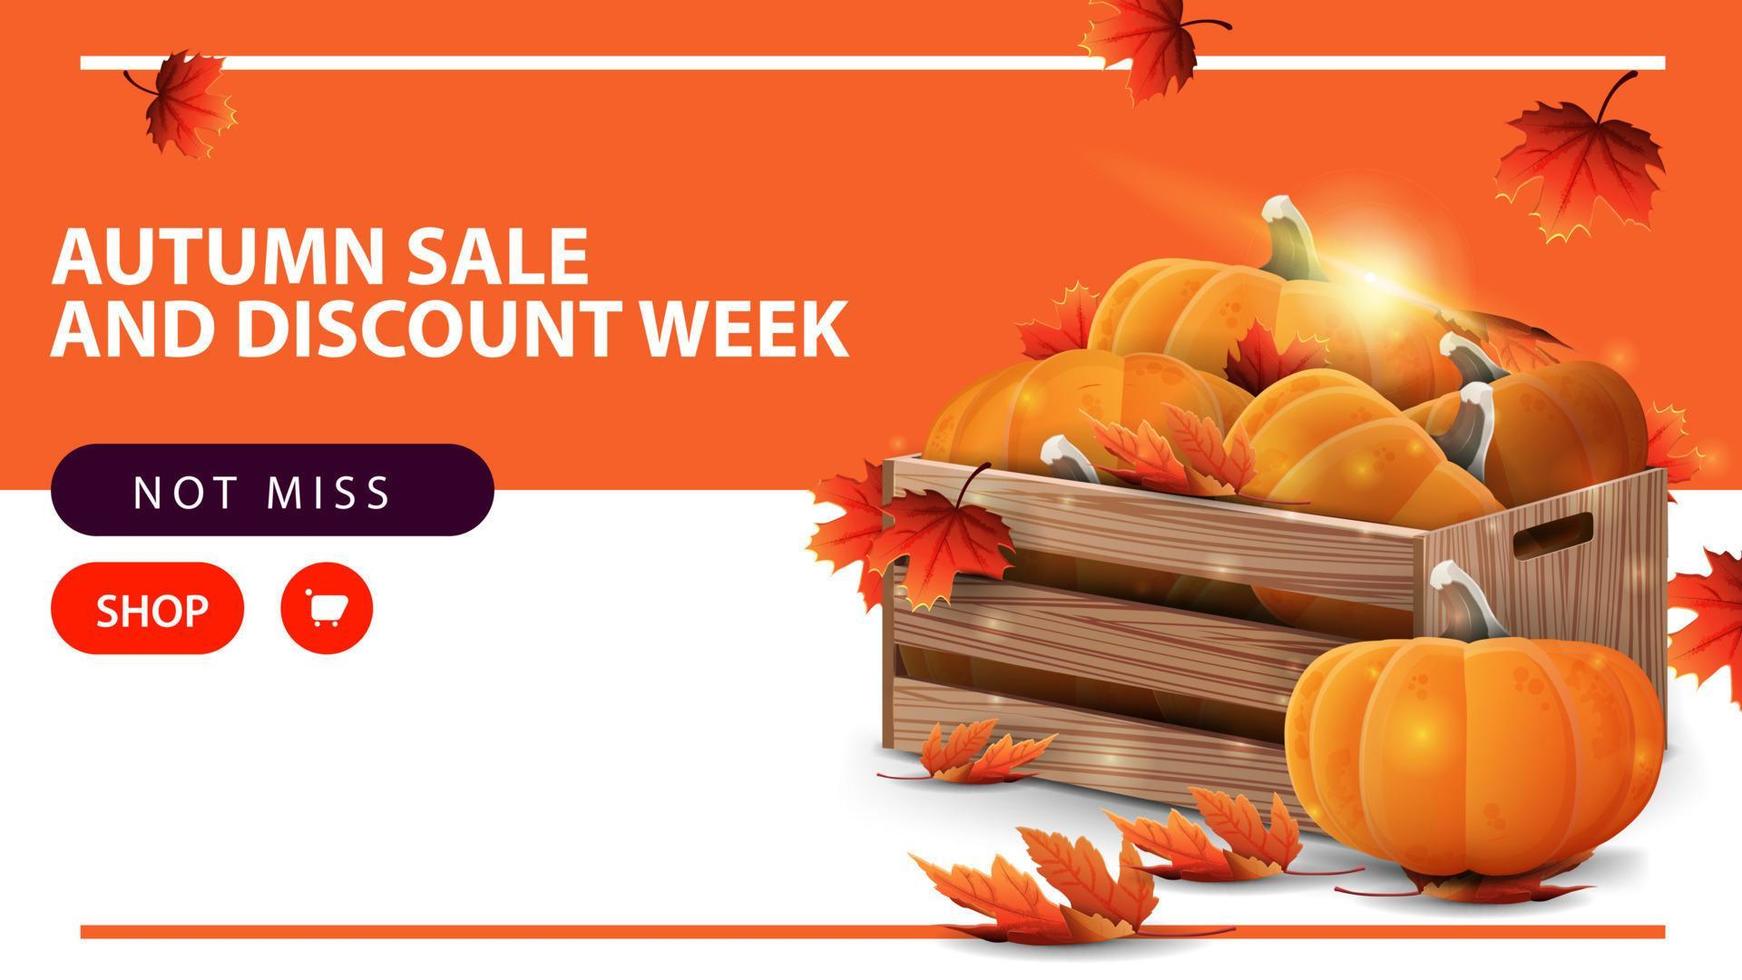 Semana de venda e desconto de outono, banner de web de desconto horizontal com caixas de madeira de abóboras maduras e beirais de outono vetor